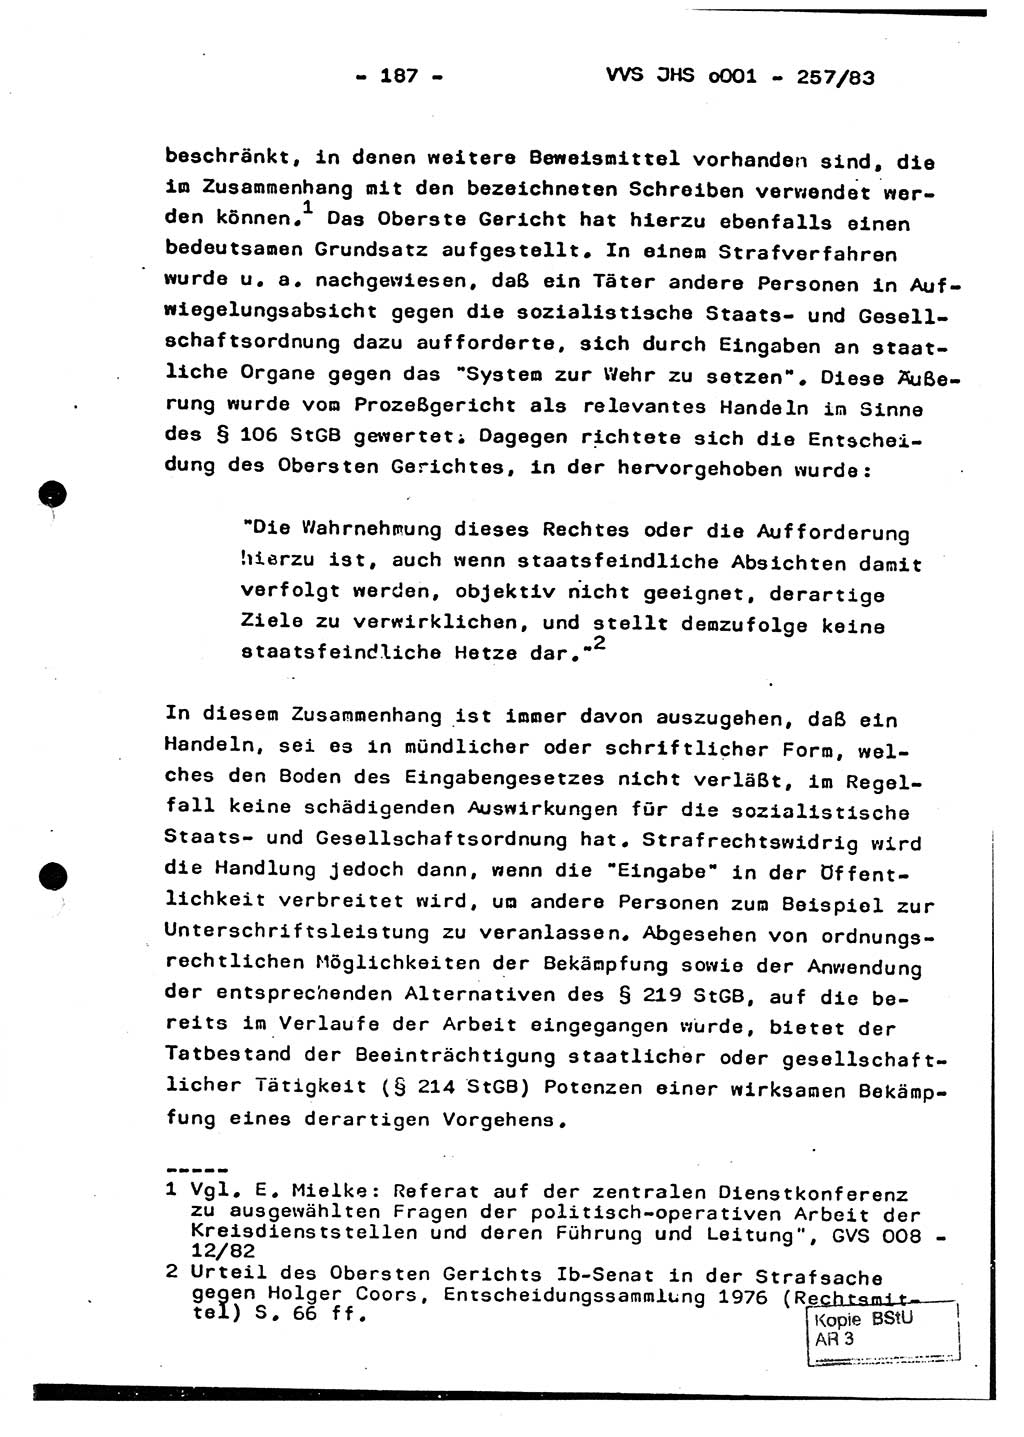 Dissertation, Oberst Helmut Lubas (BV Mdg.), Oberstleutnant Manfred Eschberger (HA IX), Oberleutnant Hans-Jürgen Ludwig (JHS), Ministerium für Staatssicherheit (MfS) [Deutsche Demokratische Republik (DDR)], Juristische Hochschule (JHS), Vertrauliche Verschlußsache (VVS) o001-257/83, Potsdam 1983, Seite 187 (Diss. MfS DDR JHS VVS o001-257/83 1983, S. 187)